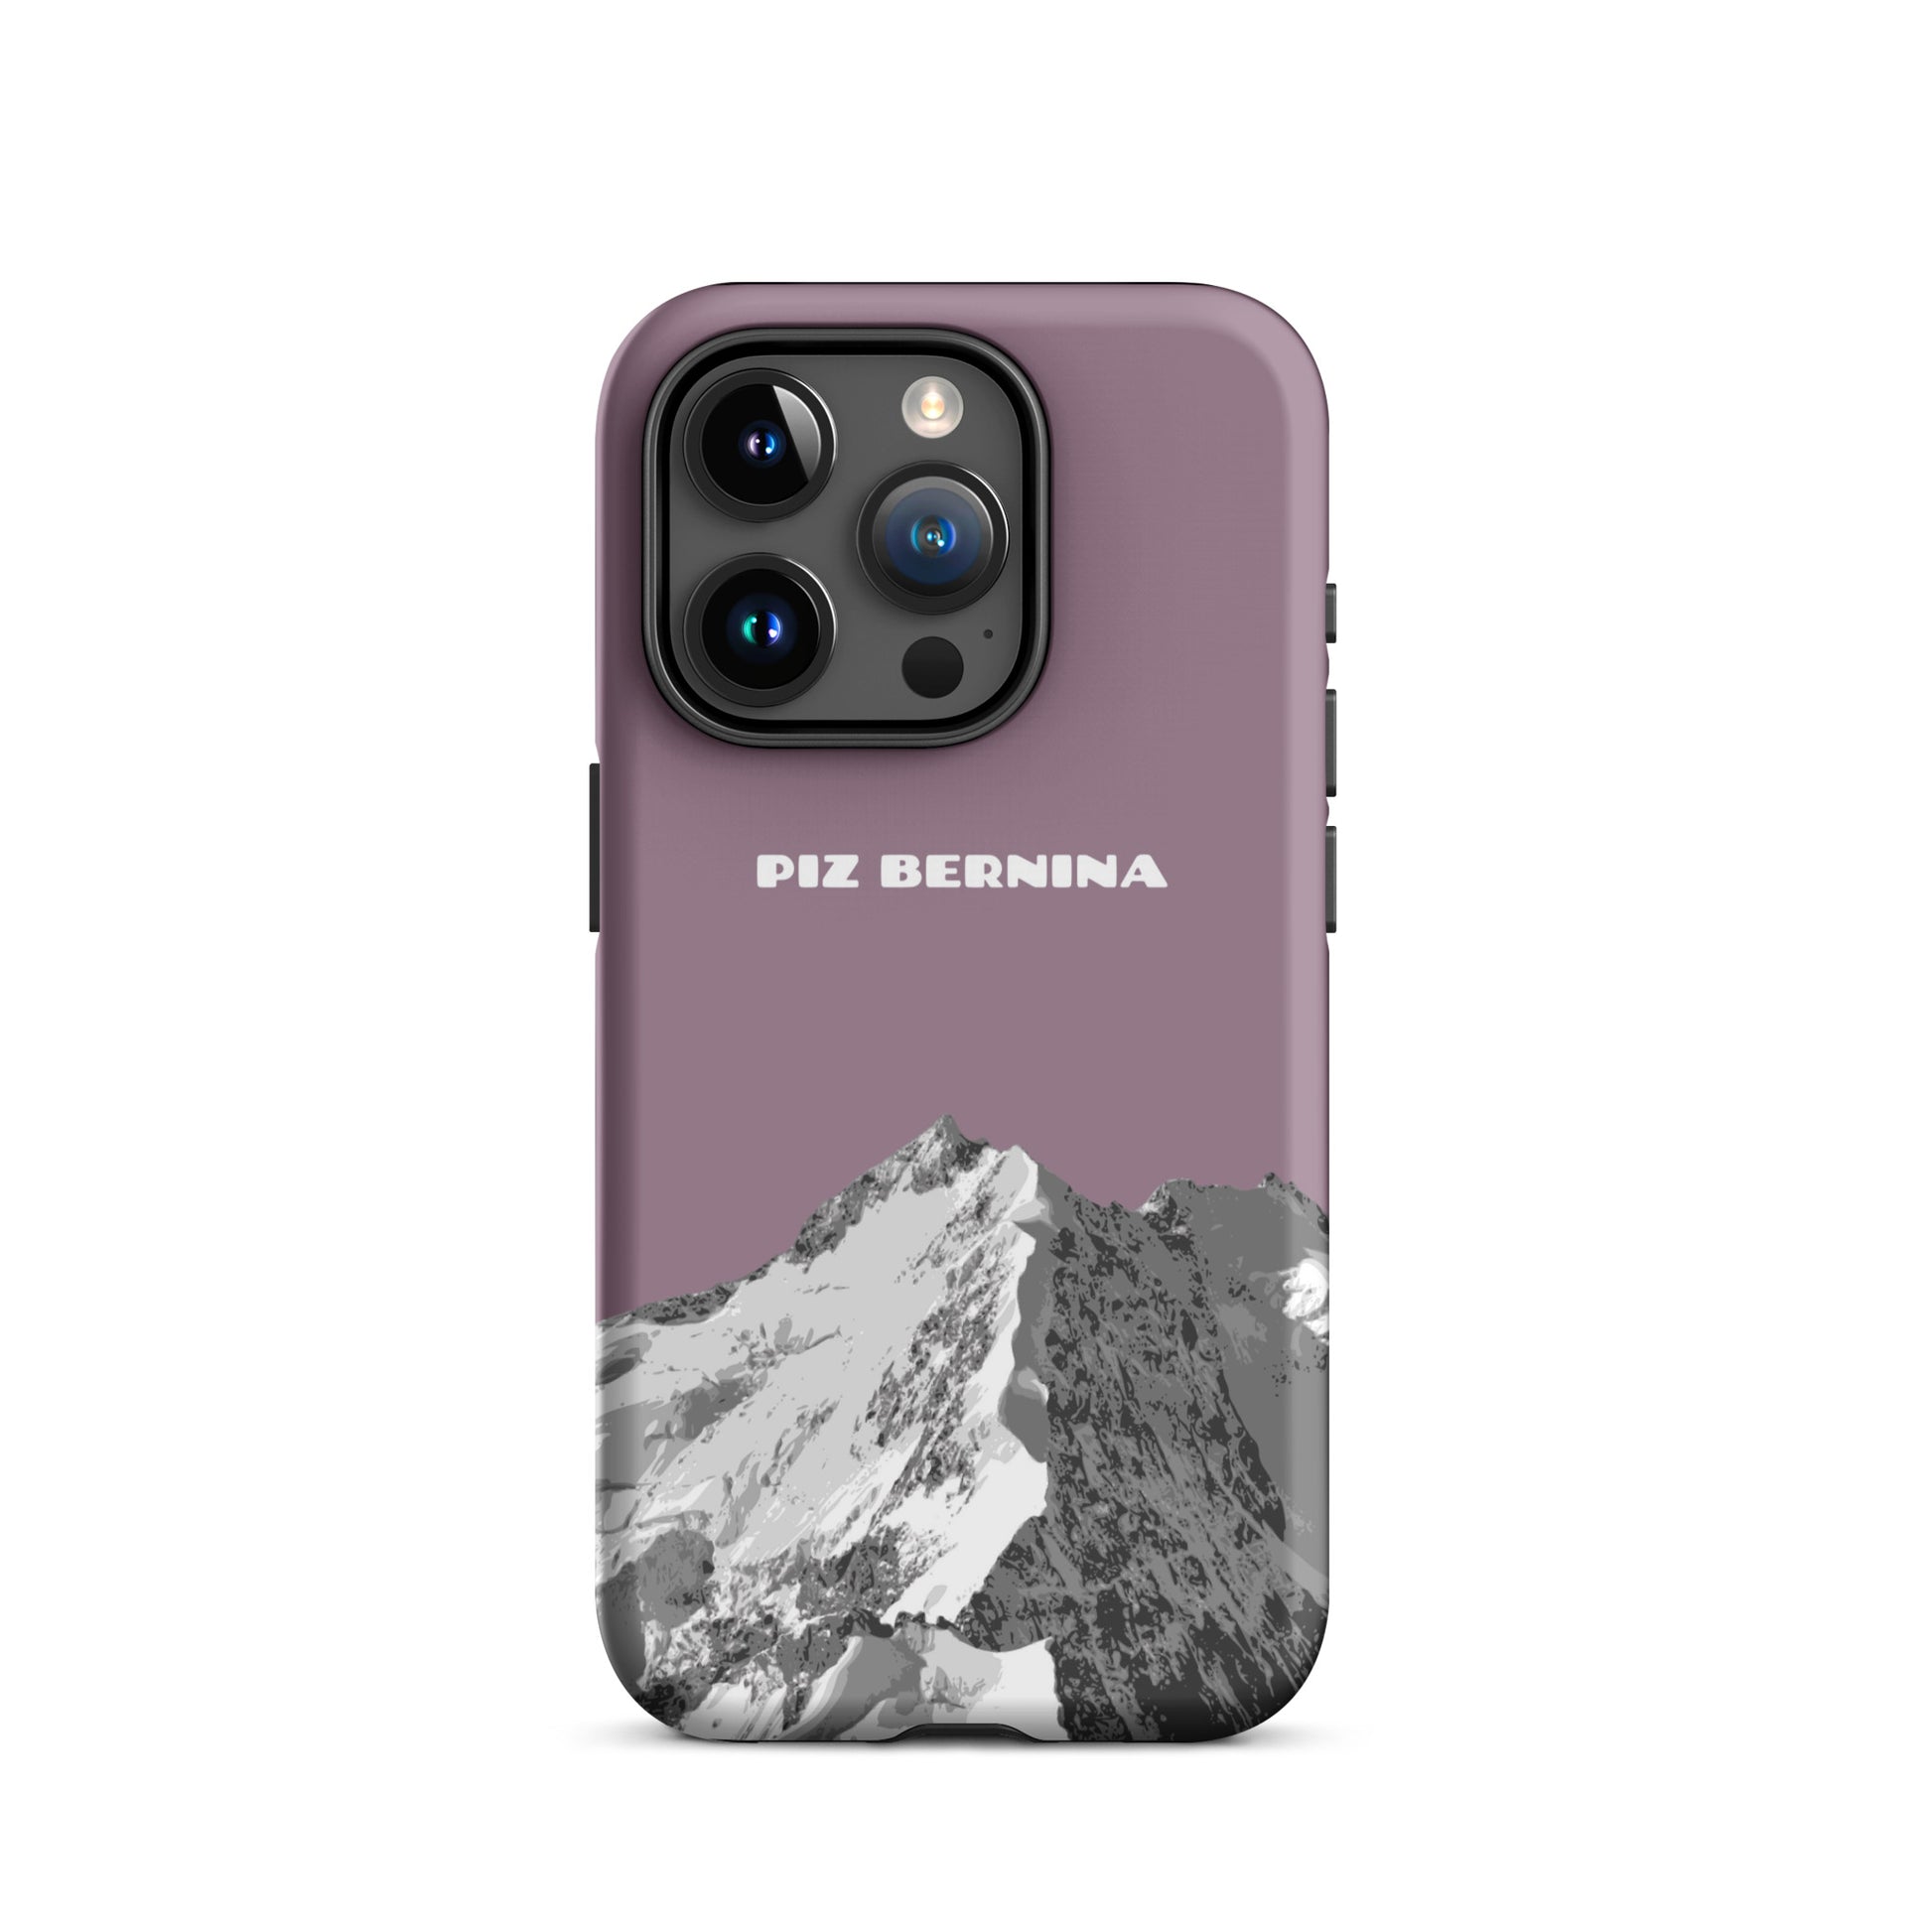 Hülle für das iPhone 15 Pro von Apple in der Farbe Pastellviolett, dass den Piz Bernina in Graubünden zeigt.